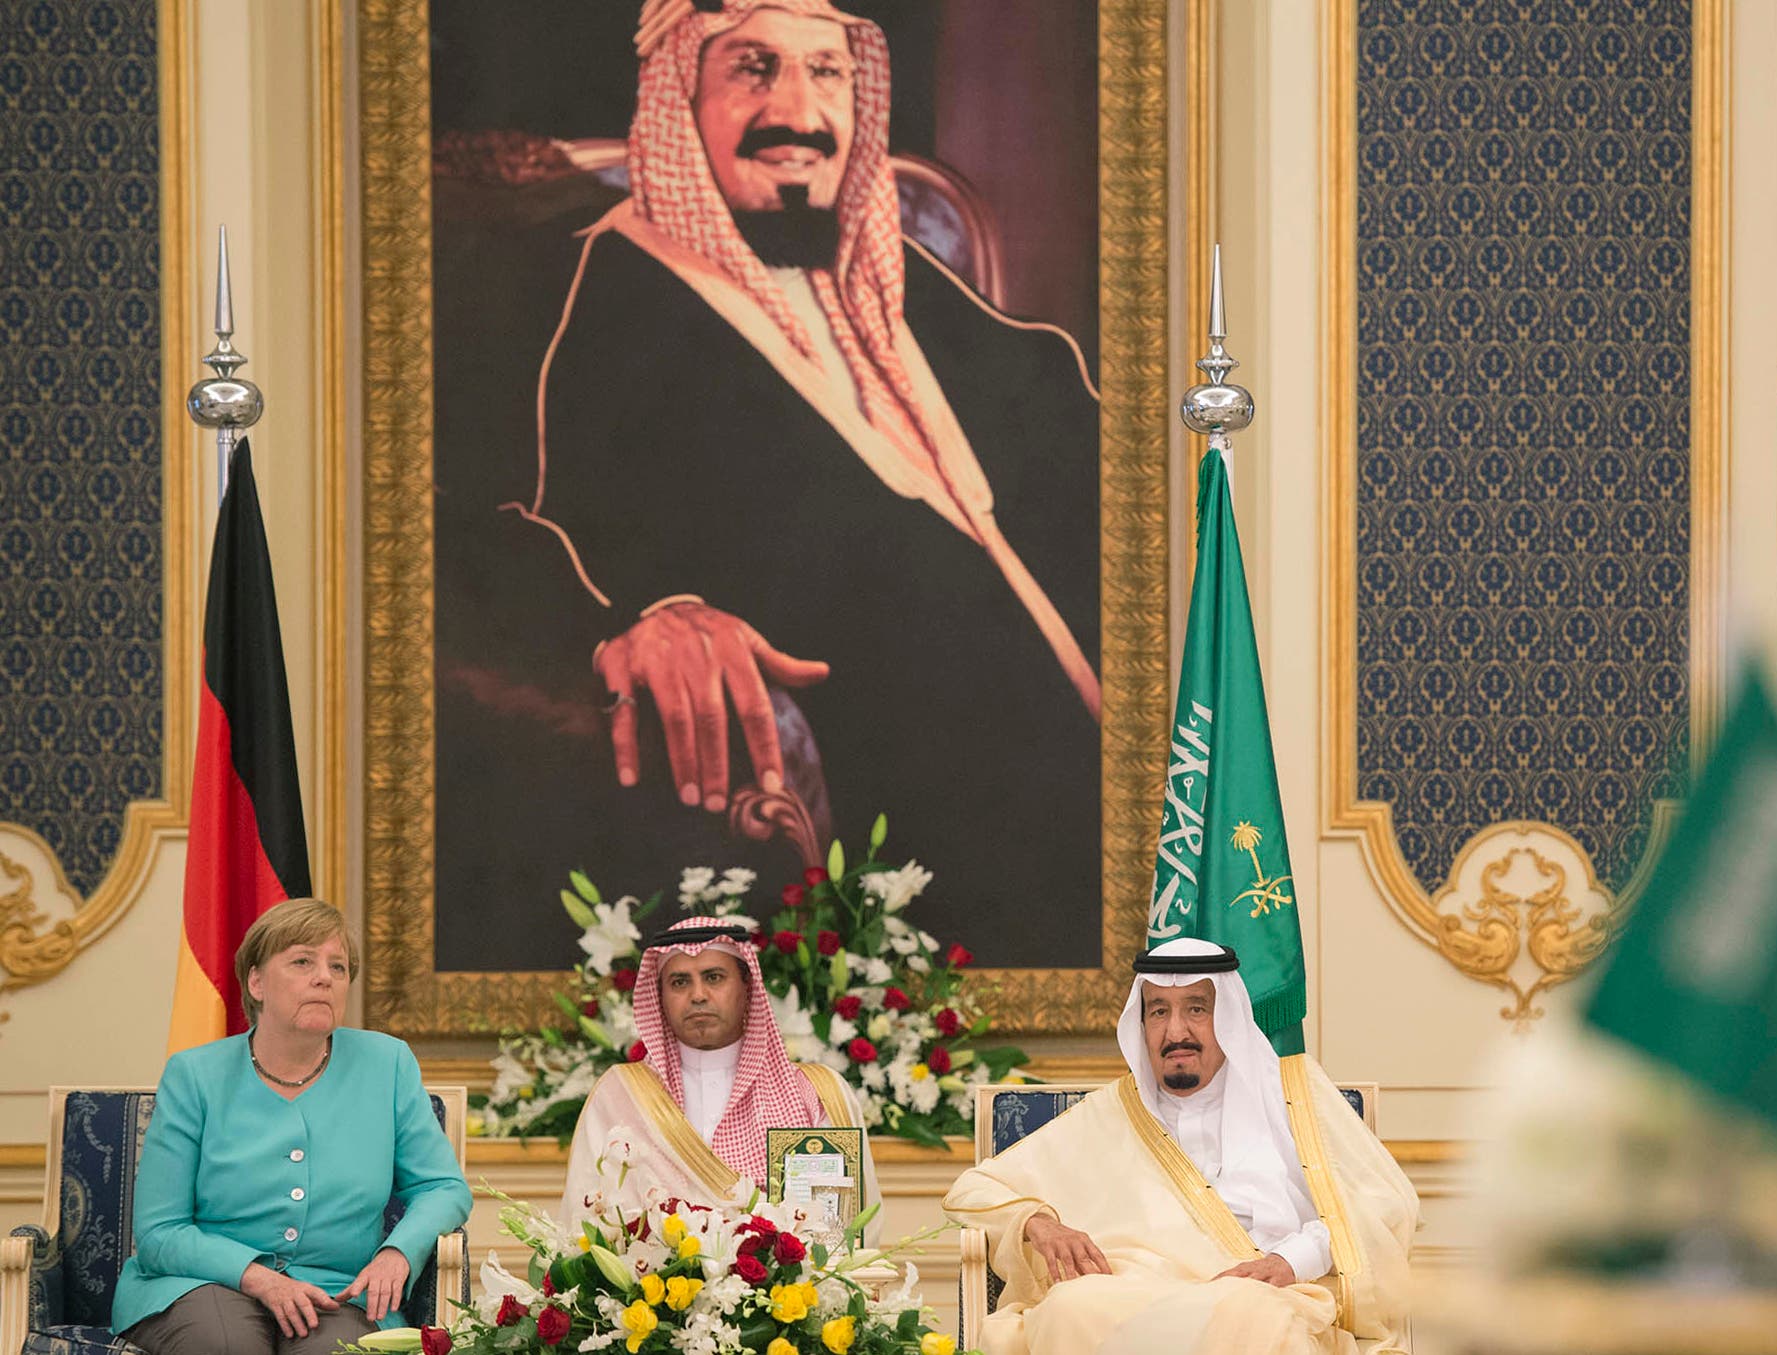 Germany's Merkel in Saudi Arabia